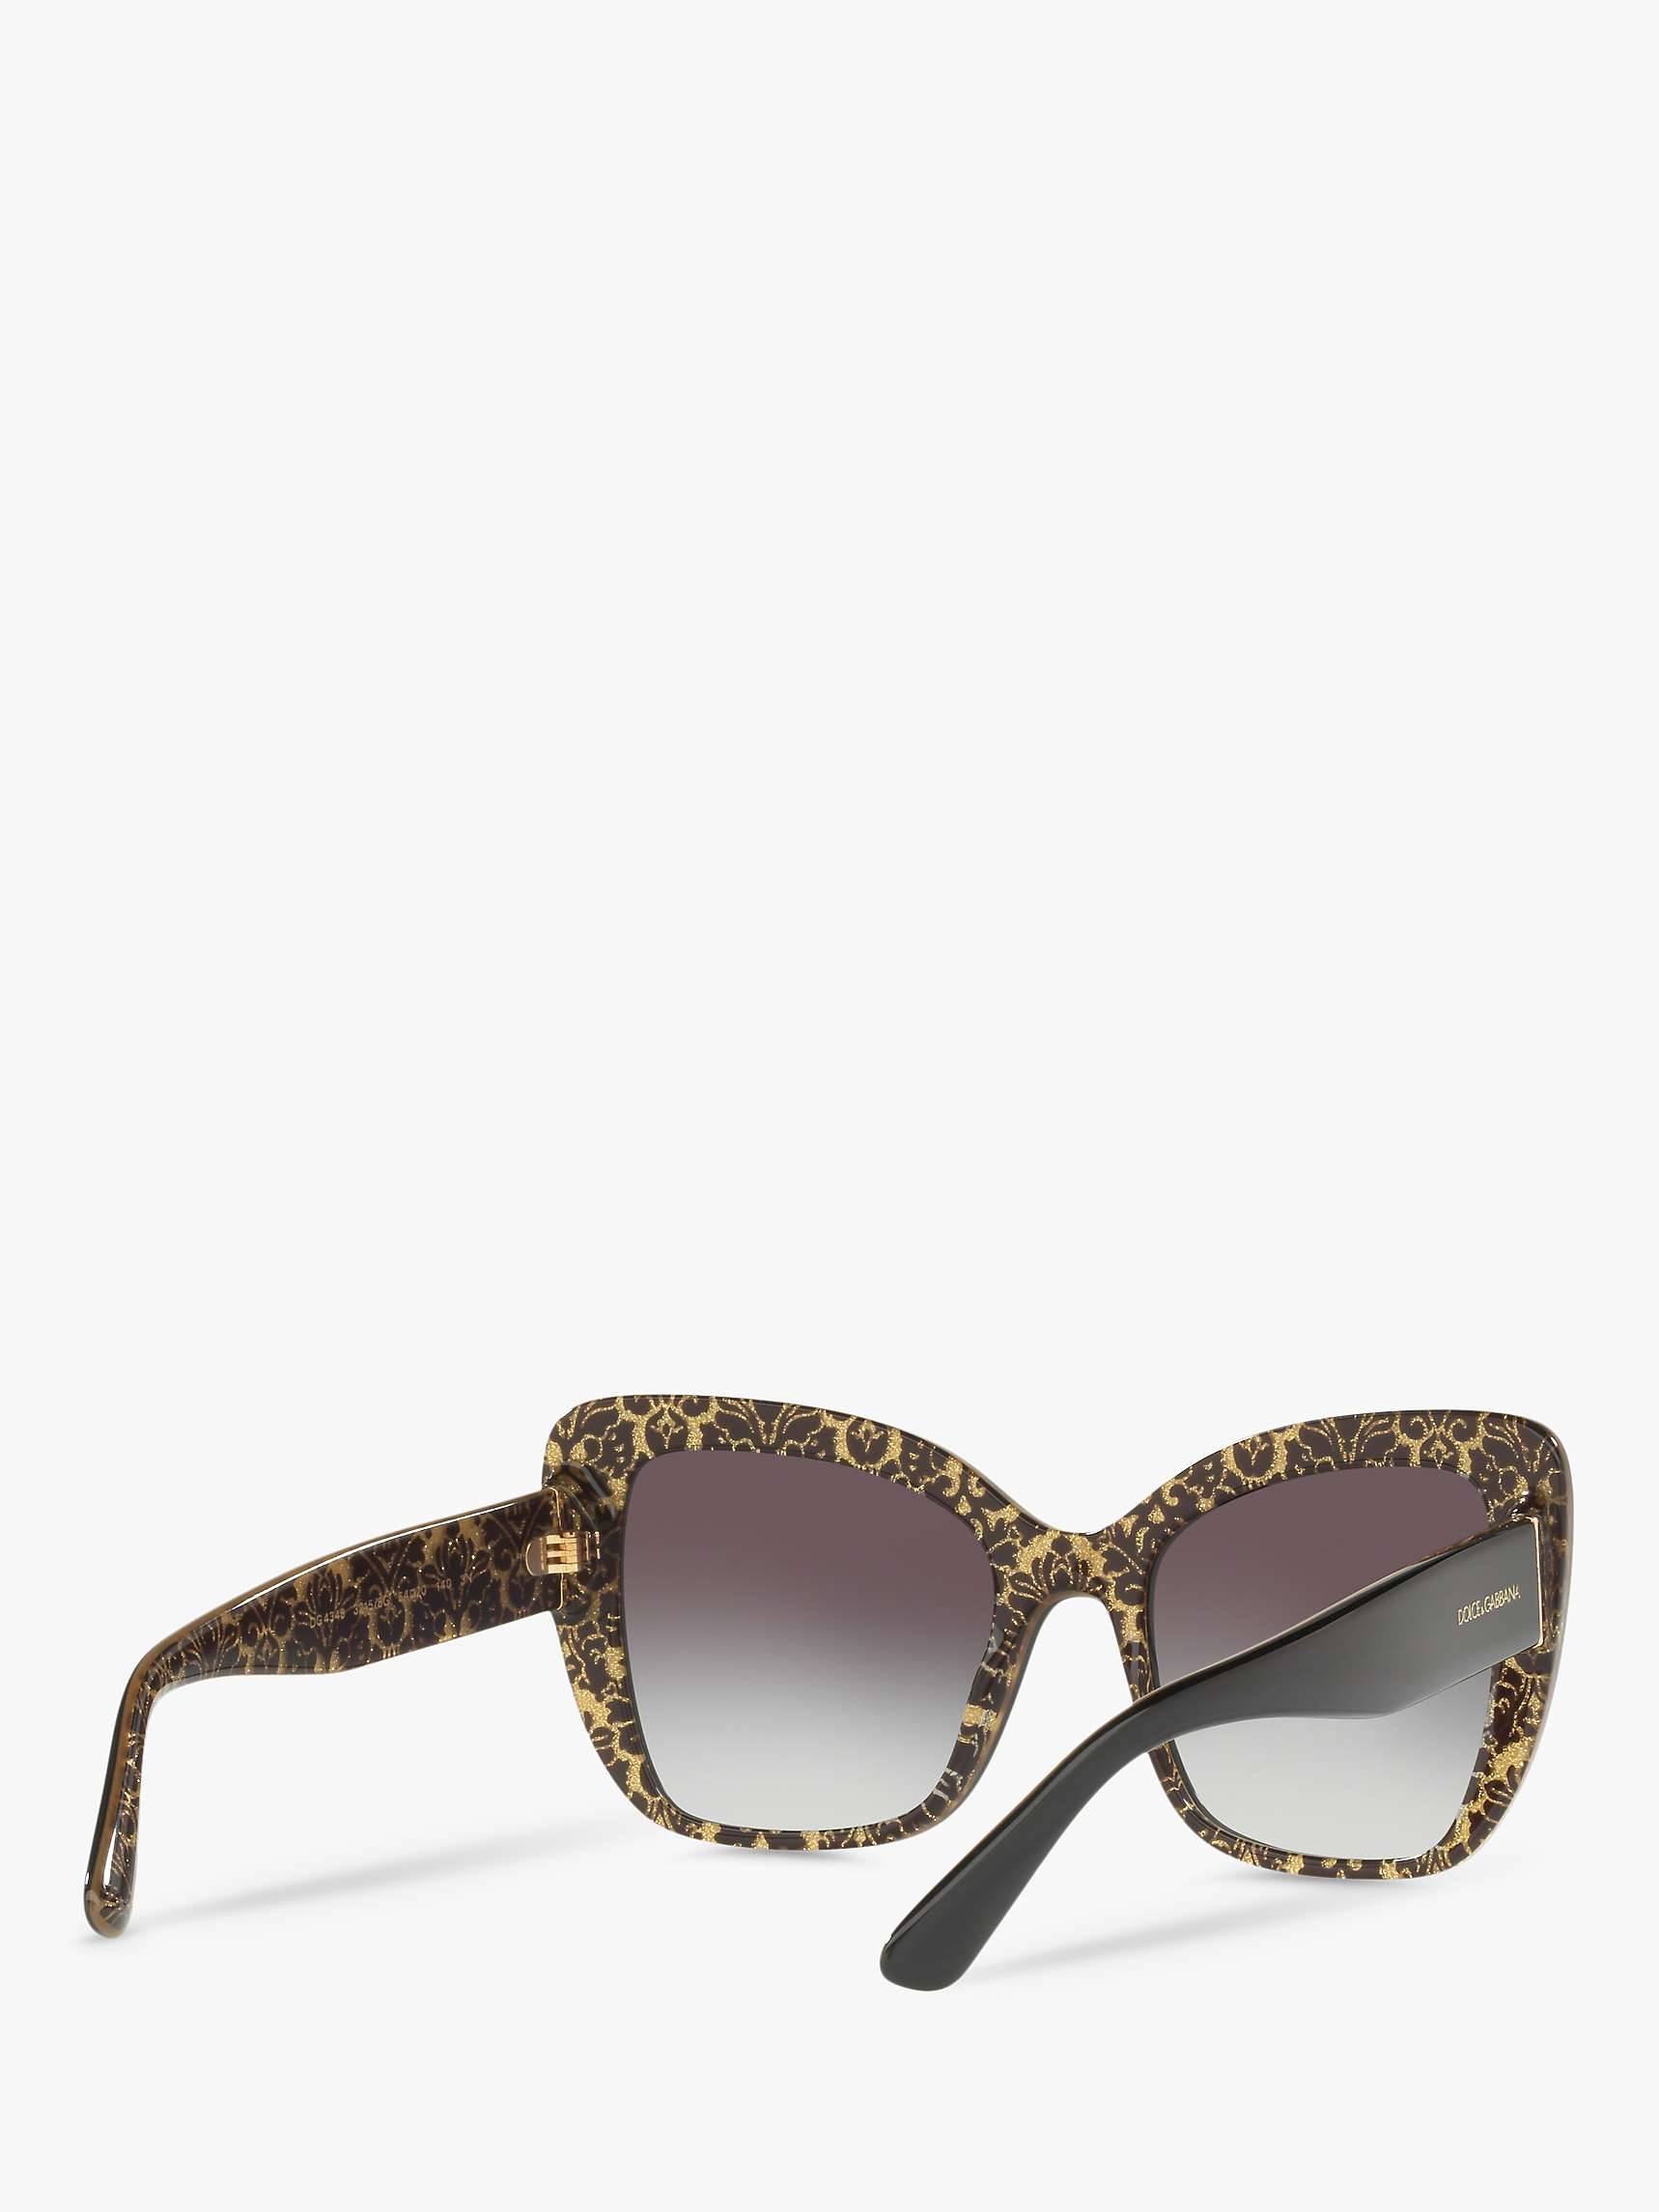 Buy Dolce & Gabbana DG4348 Women's Cat's Eye Sunglasses, Damascus Glitter/Black Online at johnlewis.com